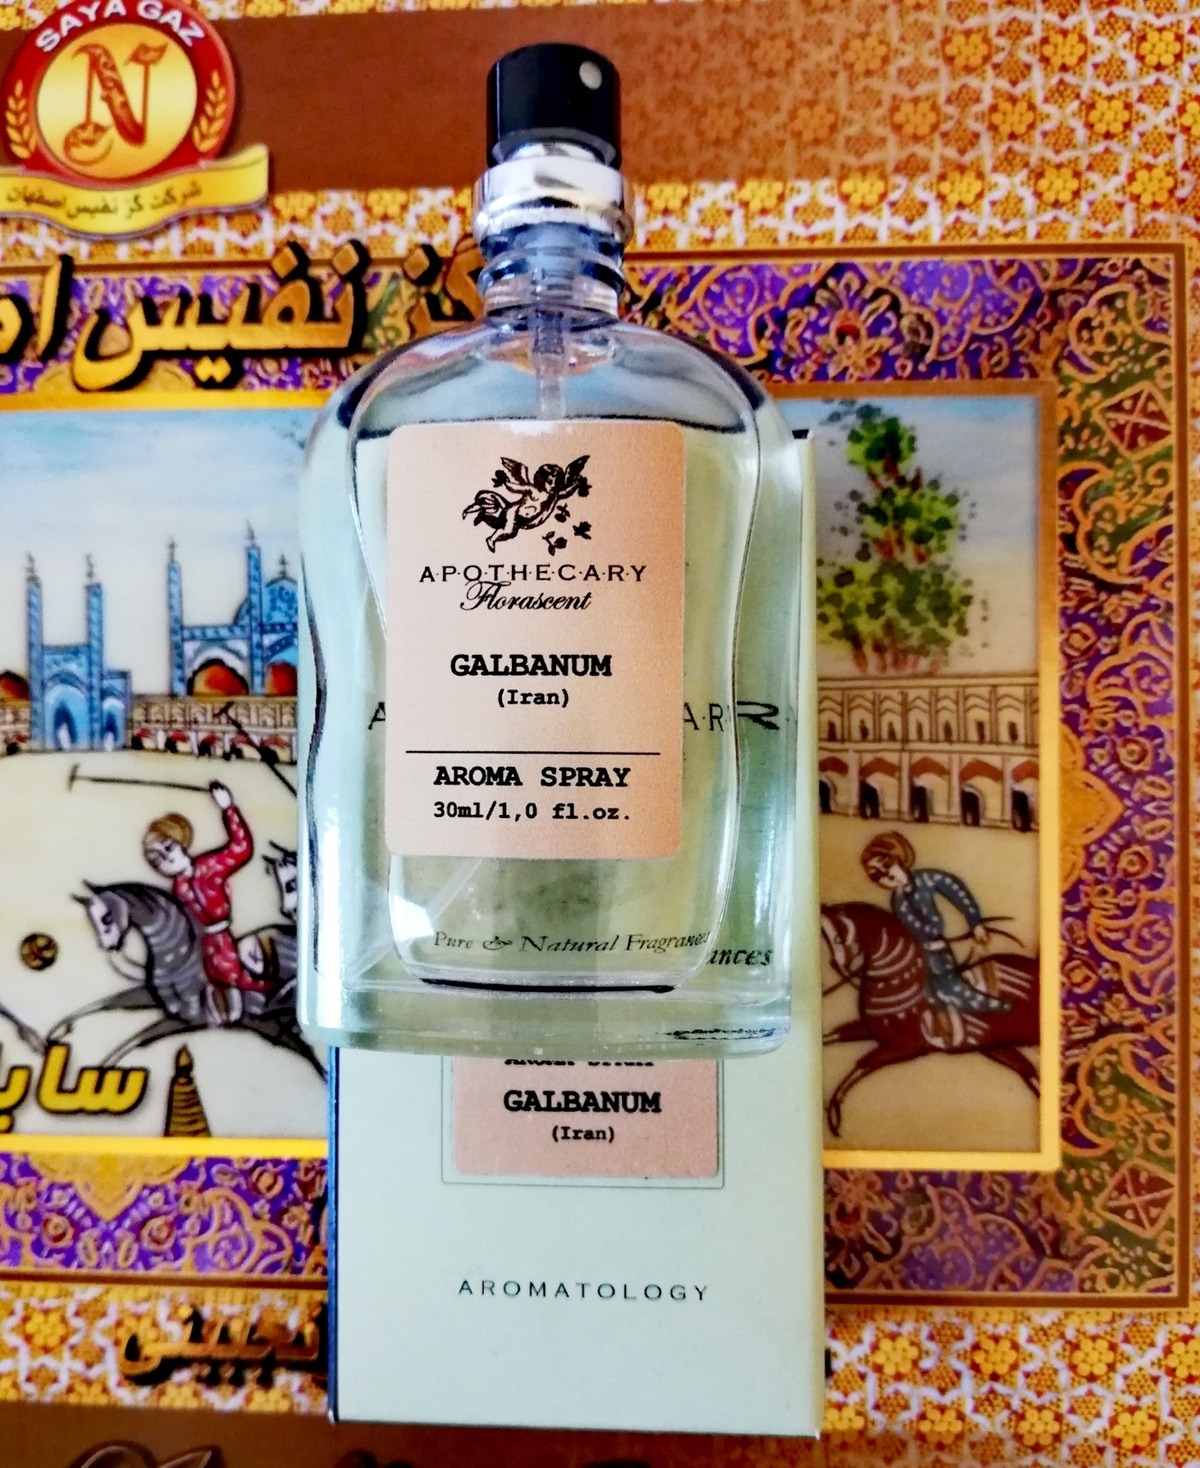 Galbanum findet man hauptsächlich im Iran. Es gibt vielen Parfums ihre charakteristische grüne Note. Dieser Duft hier ist nicht auf Parfumo gelistet, es handelt sich um reines Galbanum in Form eines "Aromasprays". Eine interessante Dufterfahrung.